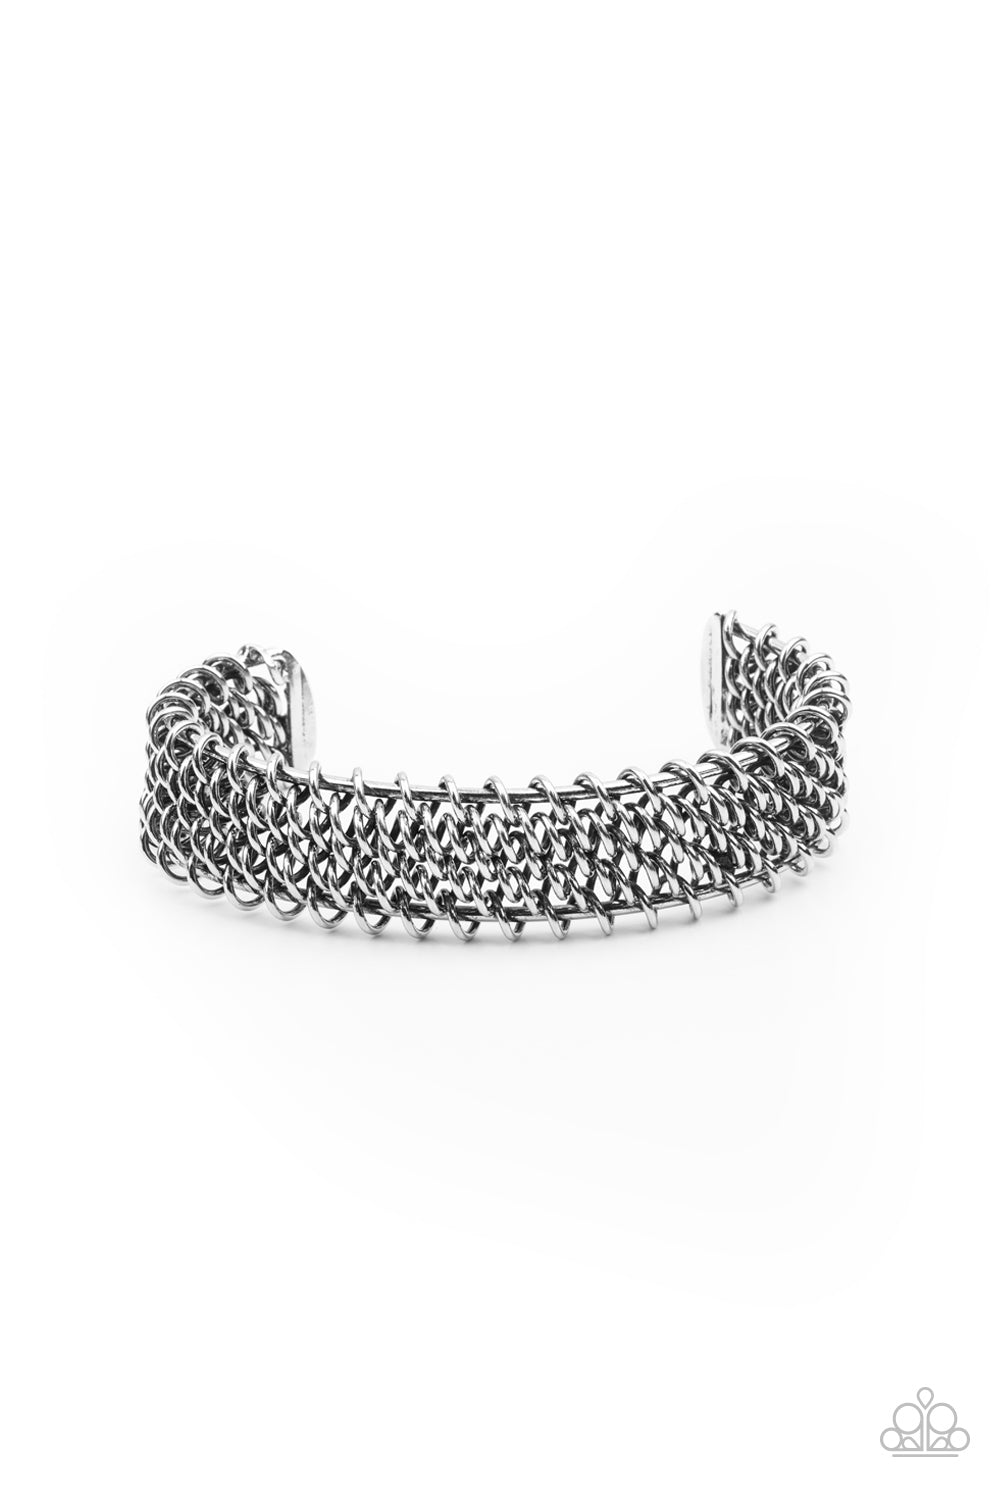 Gridlock - silver - Paparazzi mens bracelet